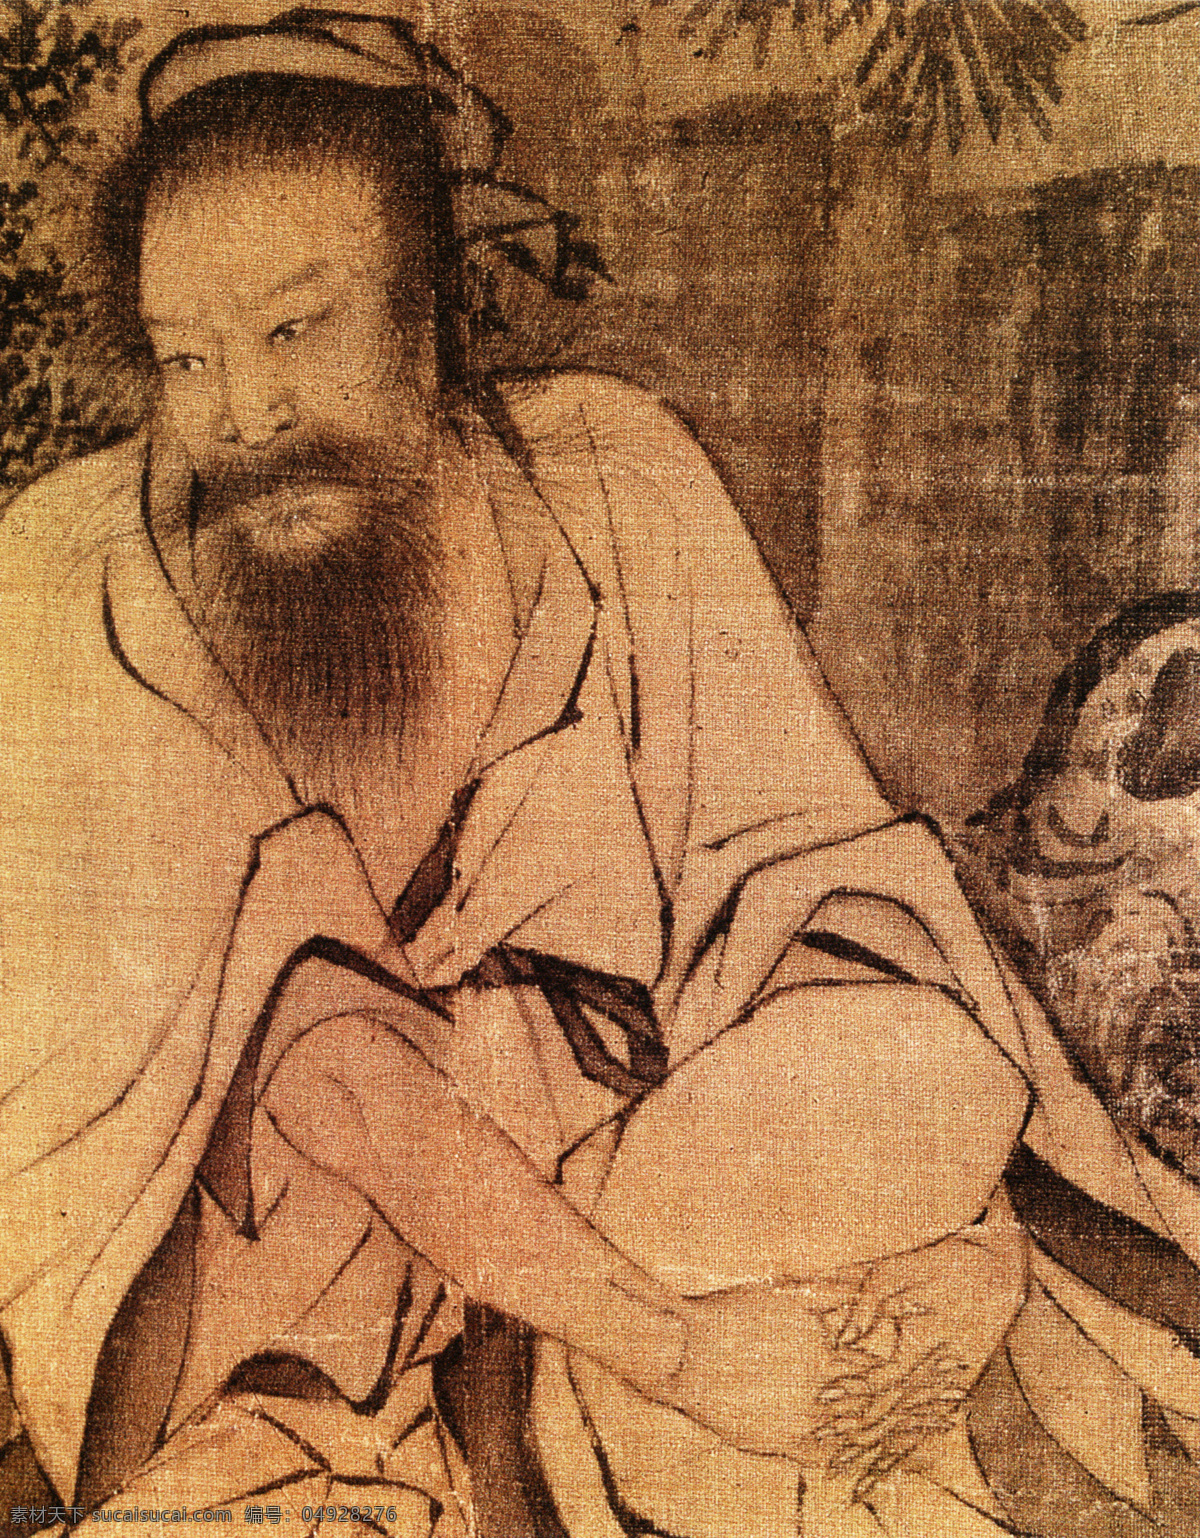 采薇图b 人物画 中国 古画 中国古画 设计素材 人物名画 古典藏画 书画美术 棕色